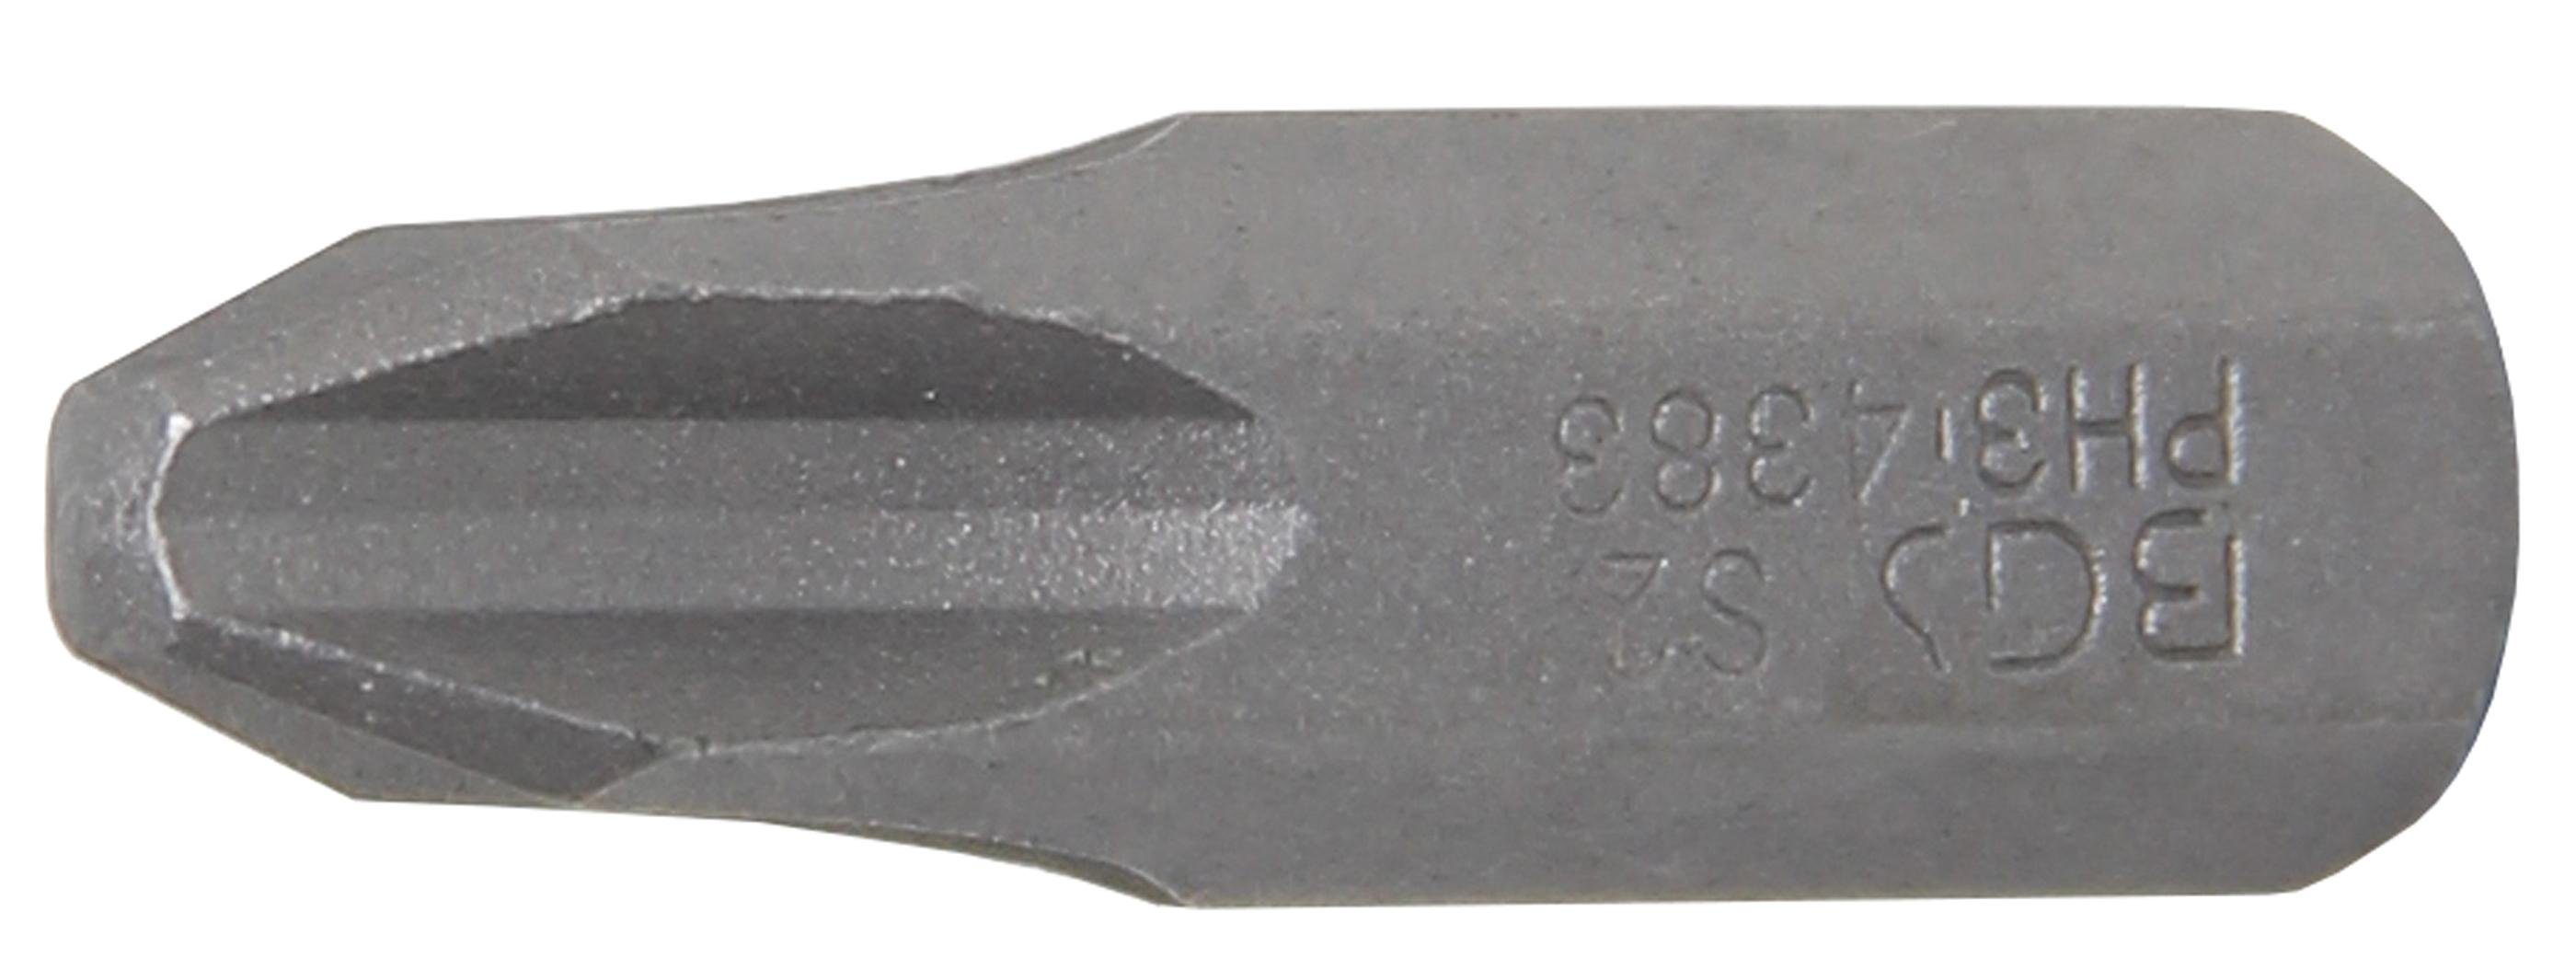 BGS technic Bit-Schraubendreher Bit, Antrieb Außensechskant 8 mm (5/16), Kreuzschlitz PH3